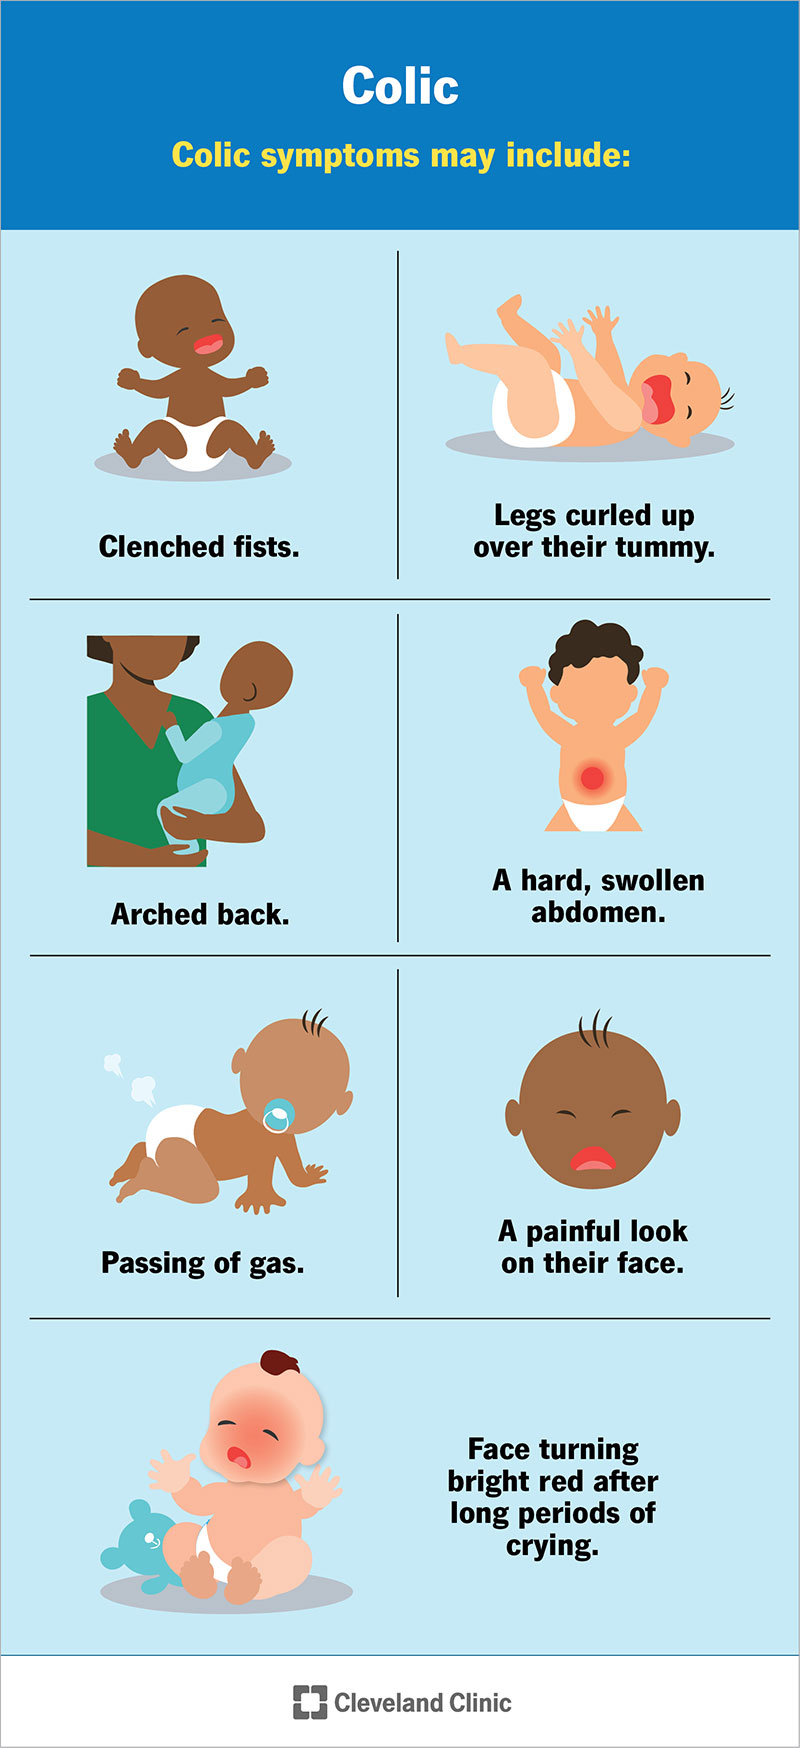 Se il tuo bambino ha le coliche, potrebbe presentare sintomi tra cui pugni chiusi, schiena inarcata e pancia dura e gonfia.